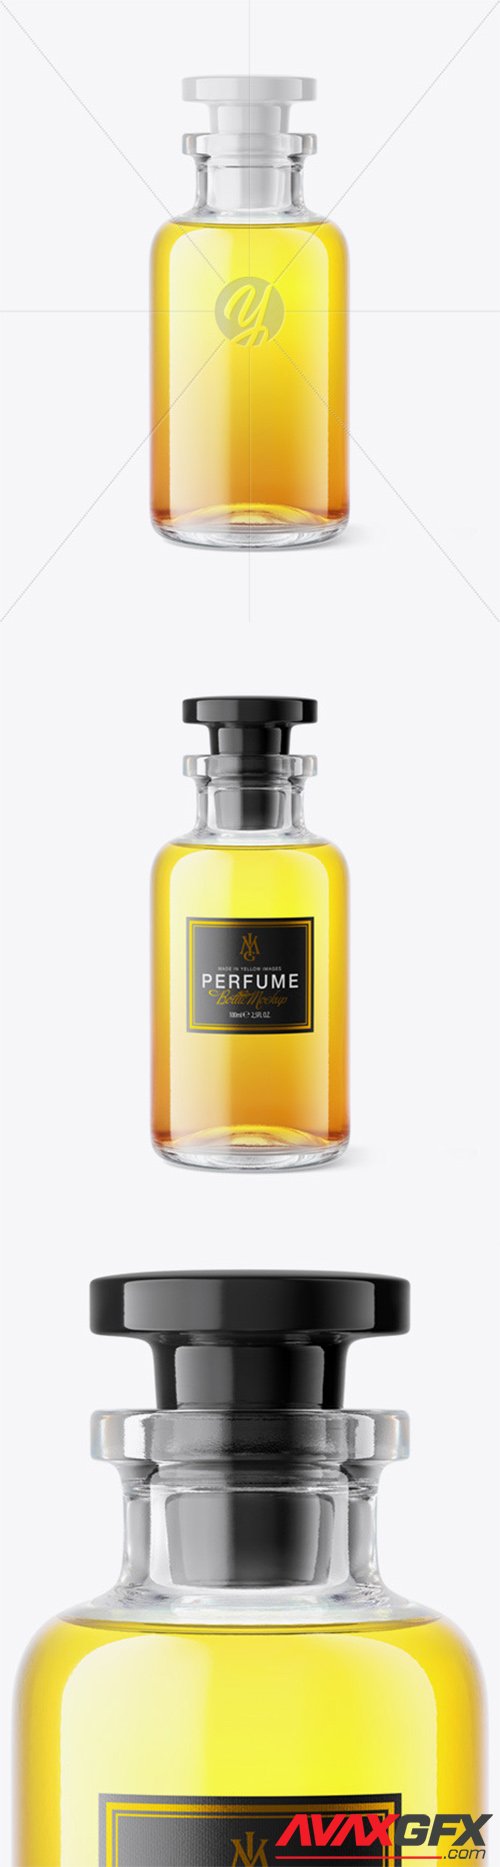 Perfume Bottle Mockup 61537